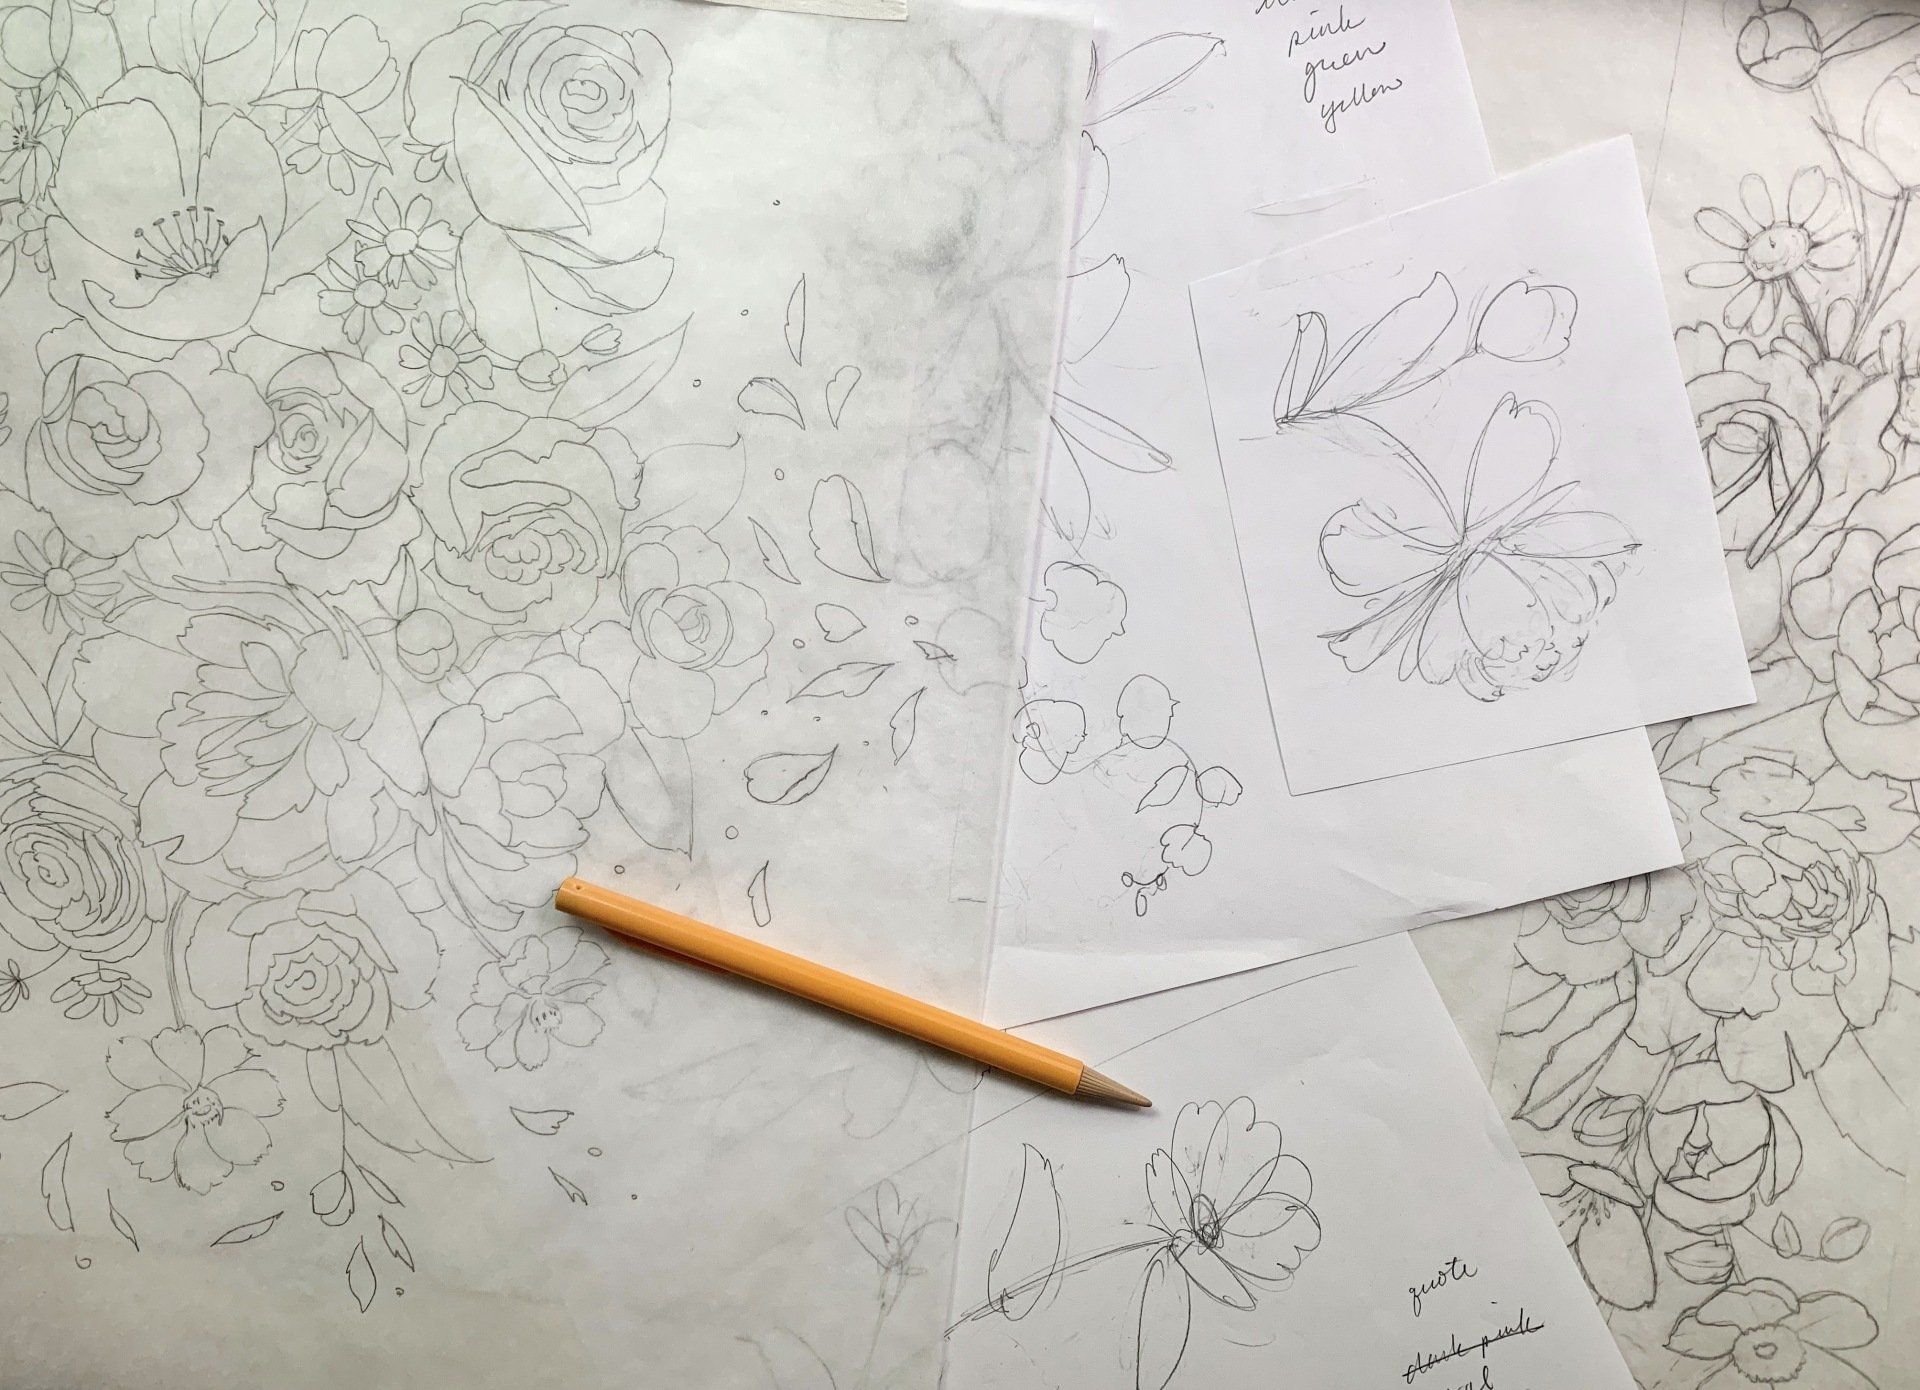 Jenna's sketch process